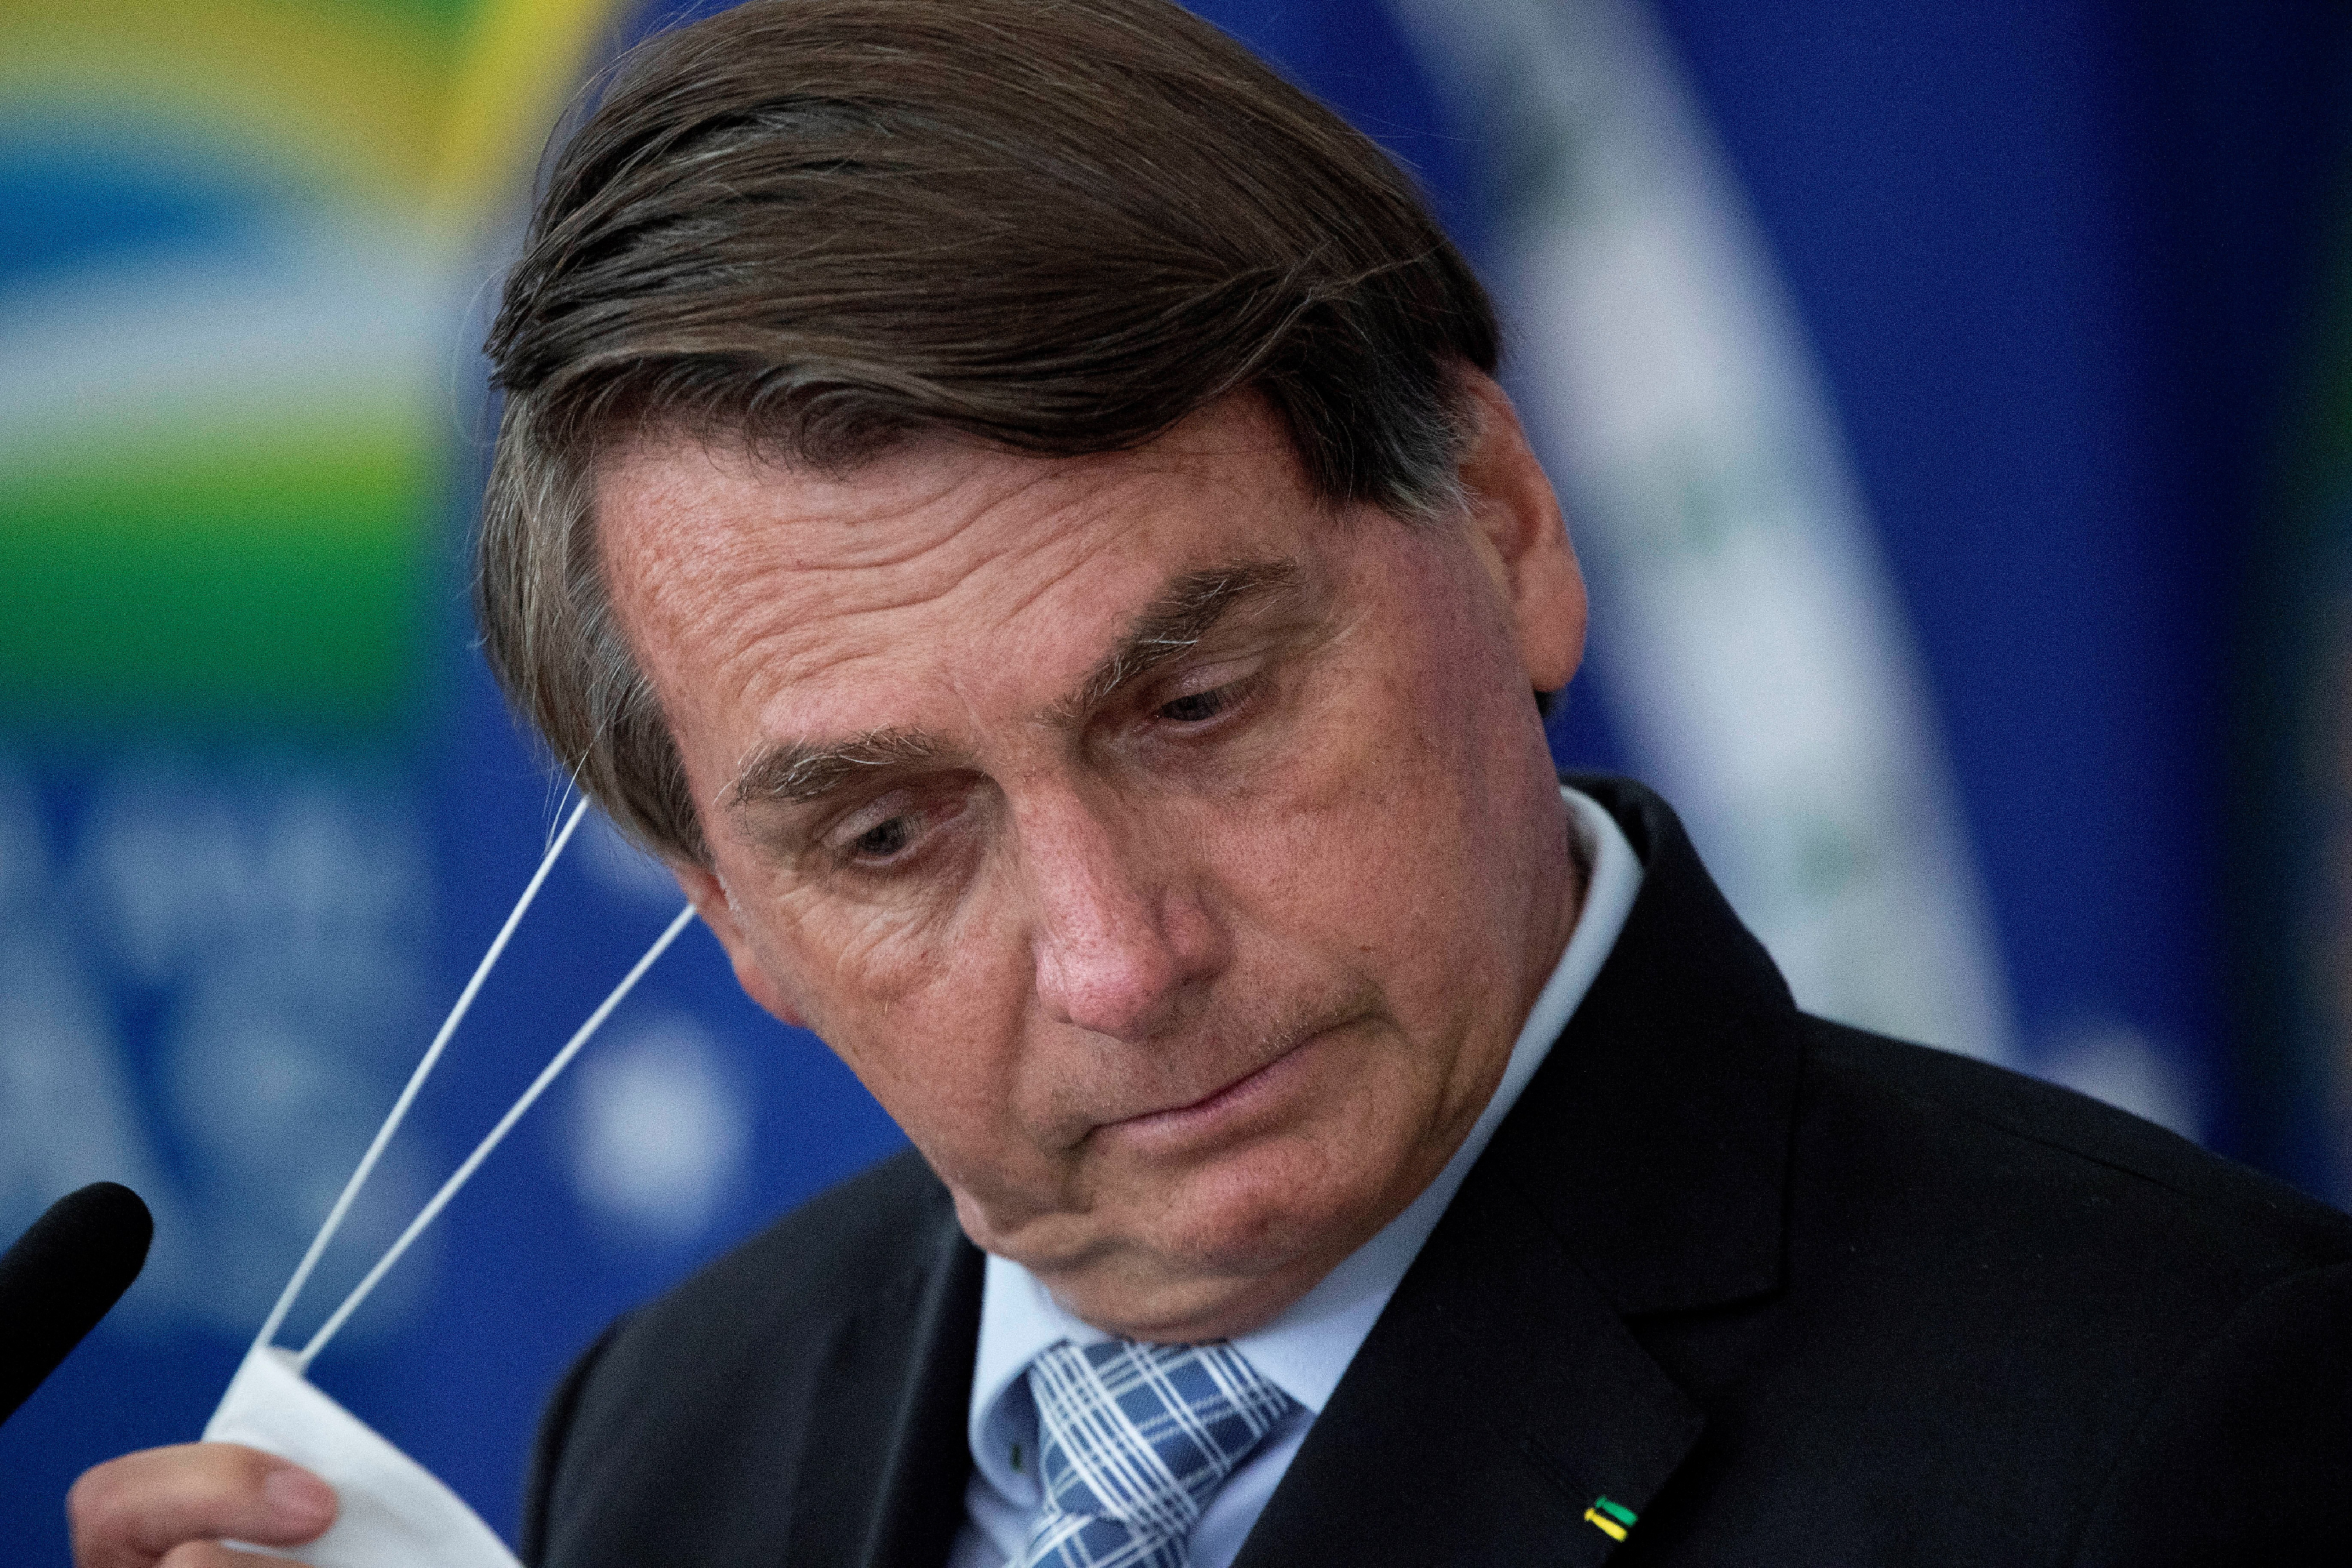 Bolsonaro távozását követeli egy vezető, konzervatív brazil lap